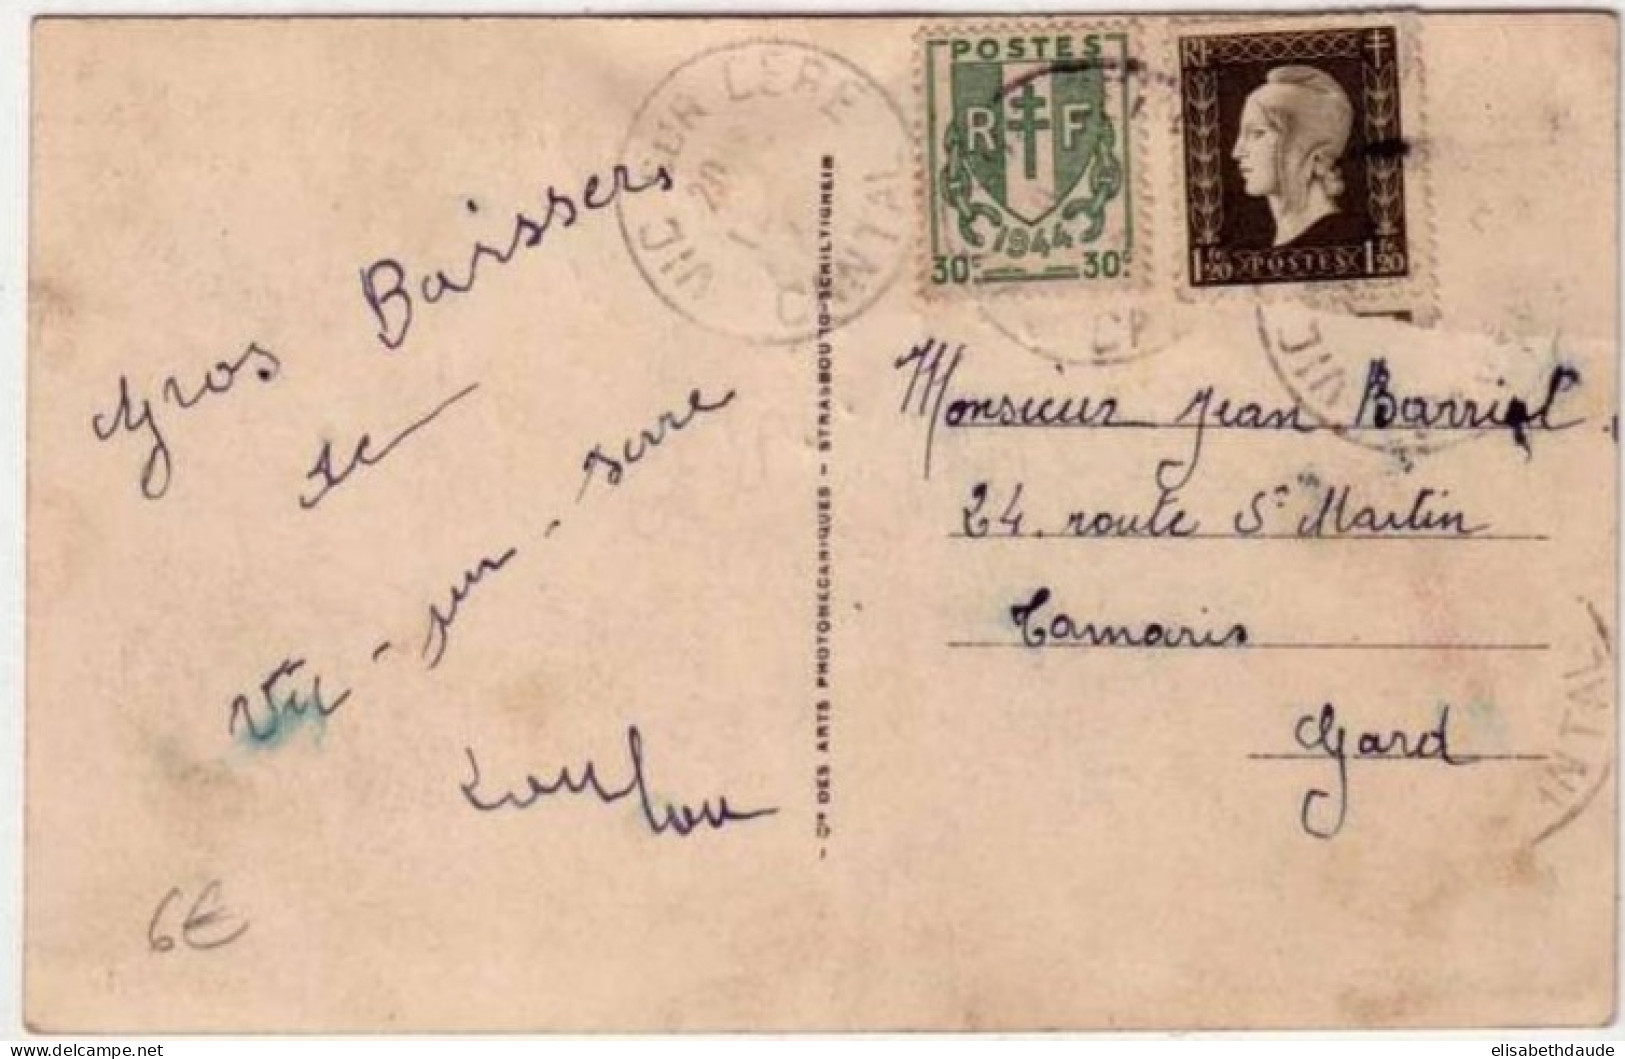 DULAC + CHAINES BRISEES - 1945 - YVERT N° 690 + 671 Sur CARTE POSTALE De VIC Sur CERE (CANTAL) Pour TAMARIS (GARD) - 1944-45 Maríanne De Dulac